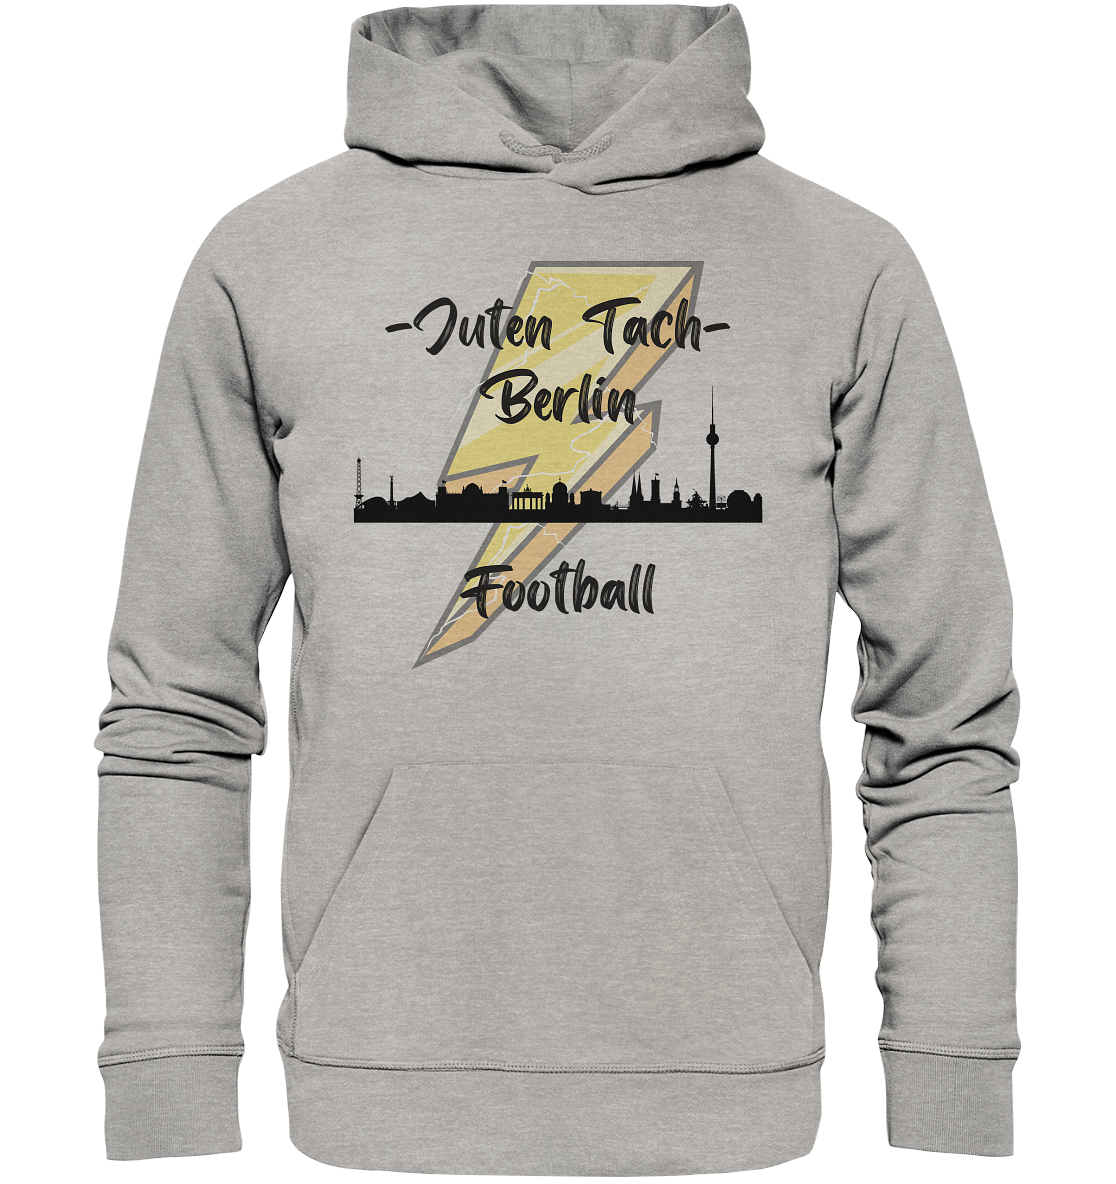 Juten Tach - Berlin Football - Organic Basic Hoodie - Football Unity Football Unity